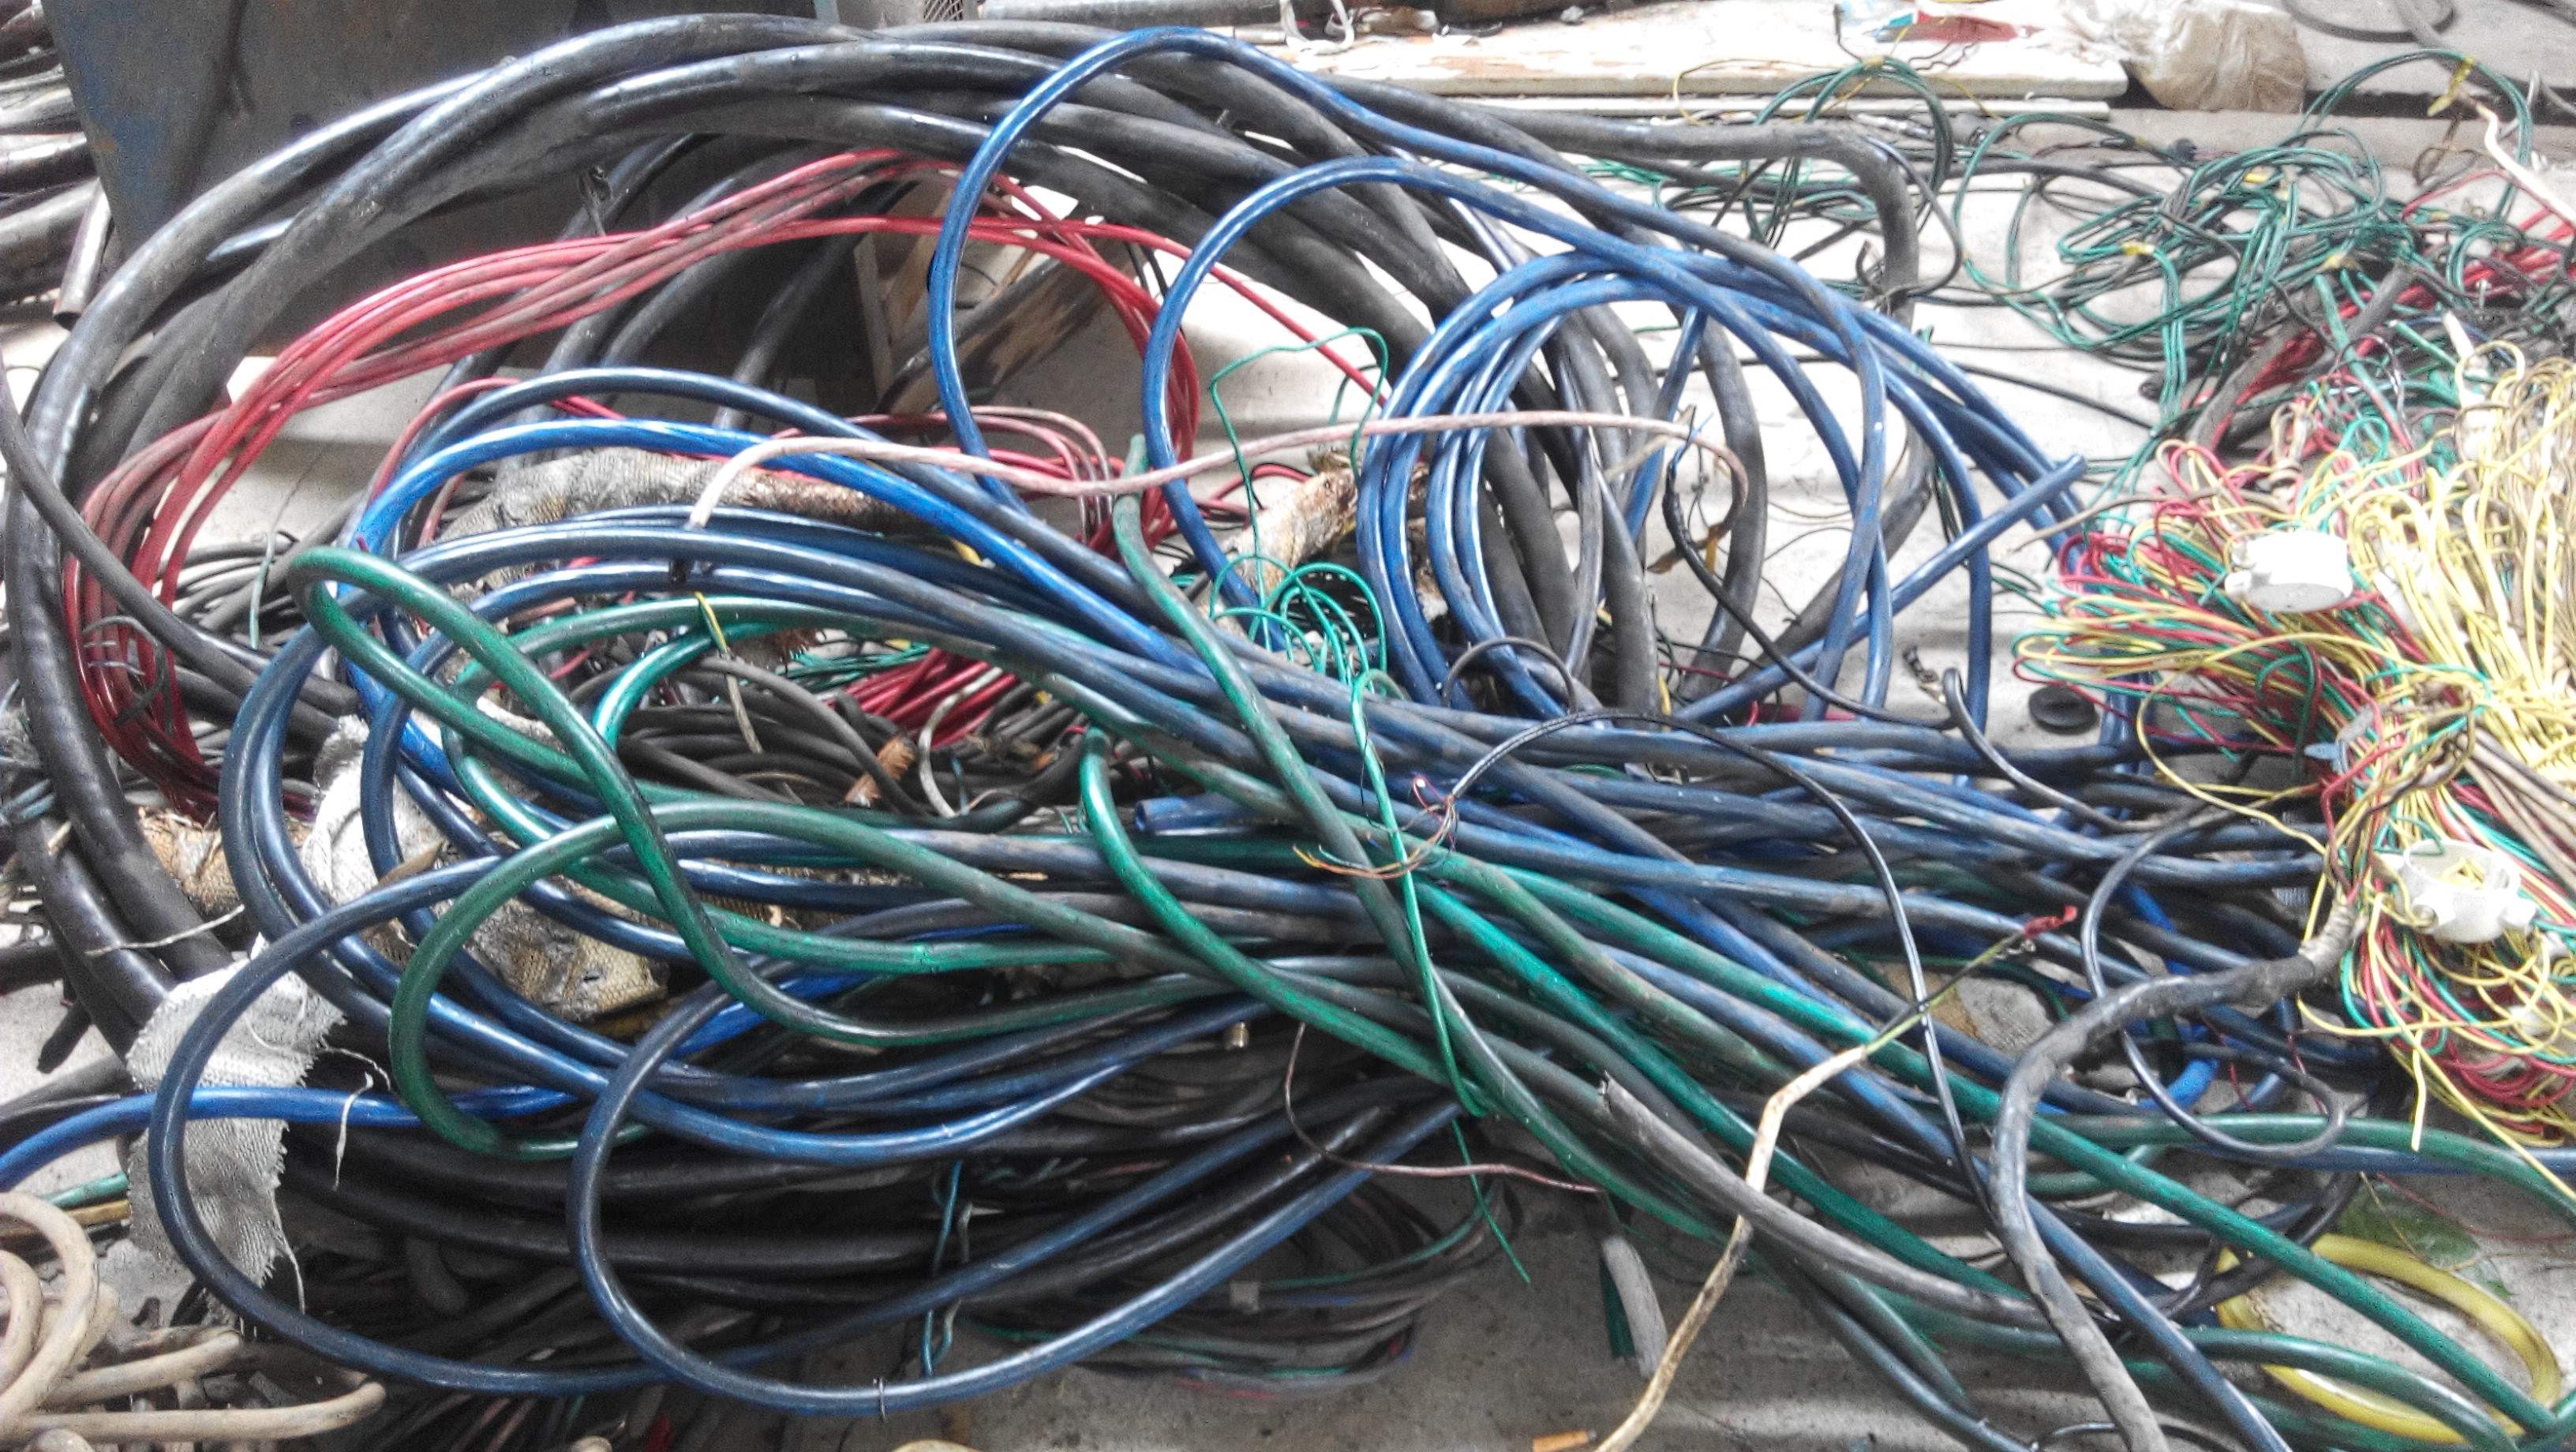 供应电线电缆回收 废铜回收   供应电线电缆回收哪家好电线电缆回收供应商 电线电缆回收价格